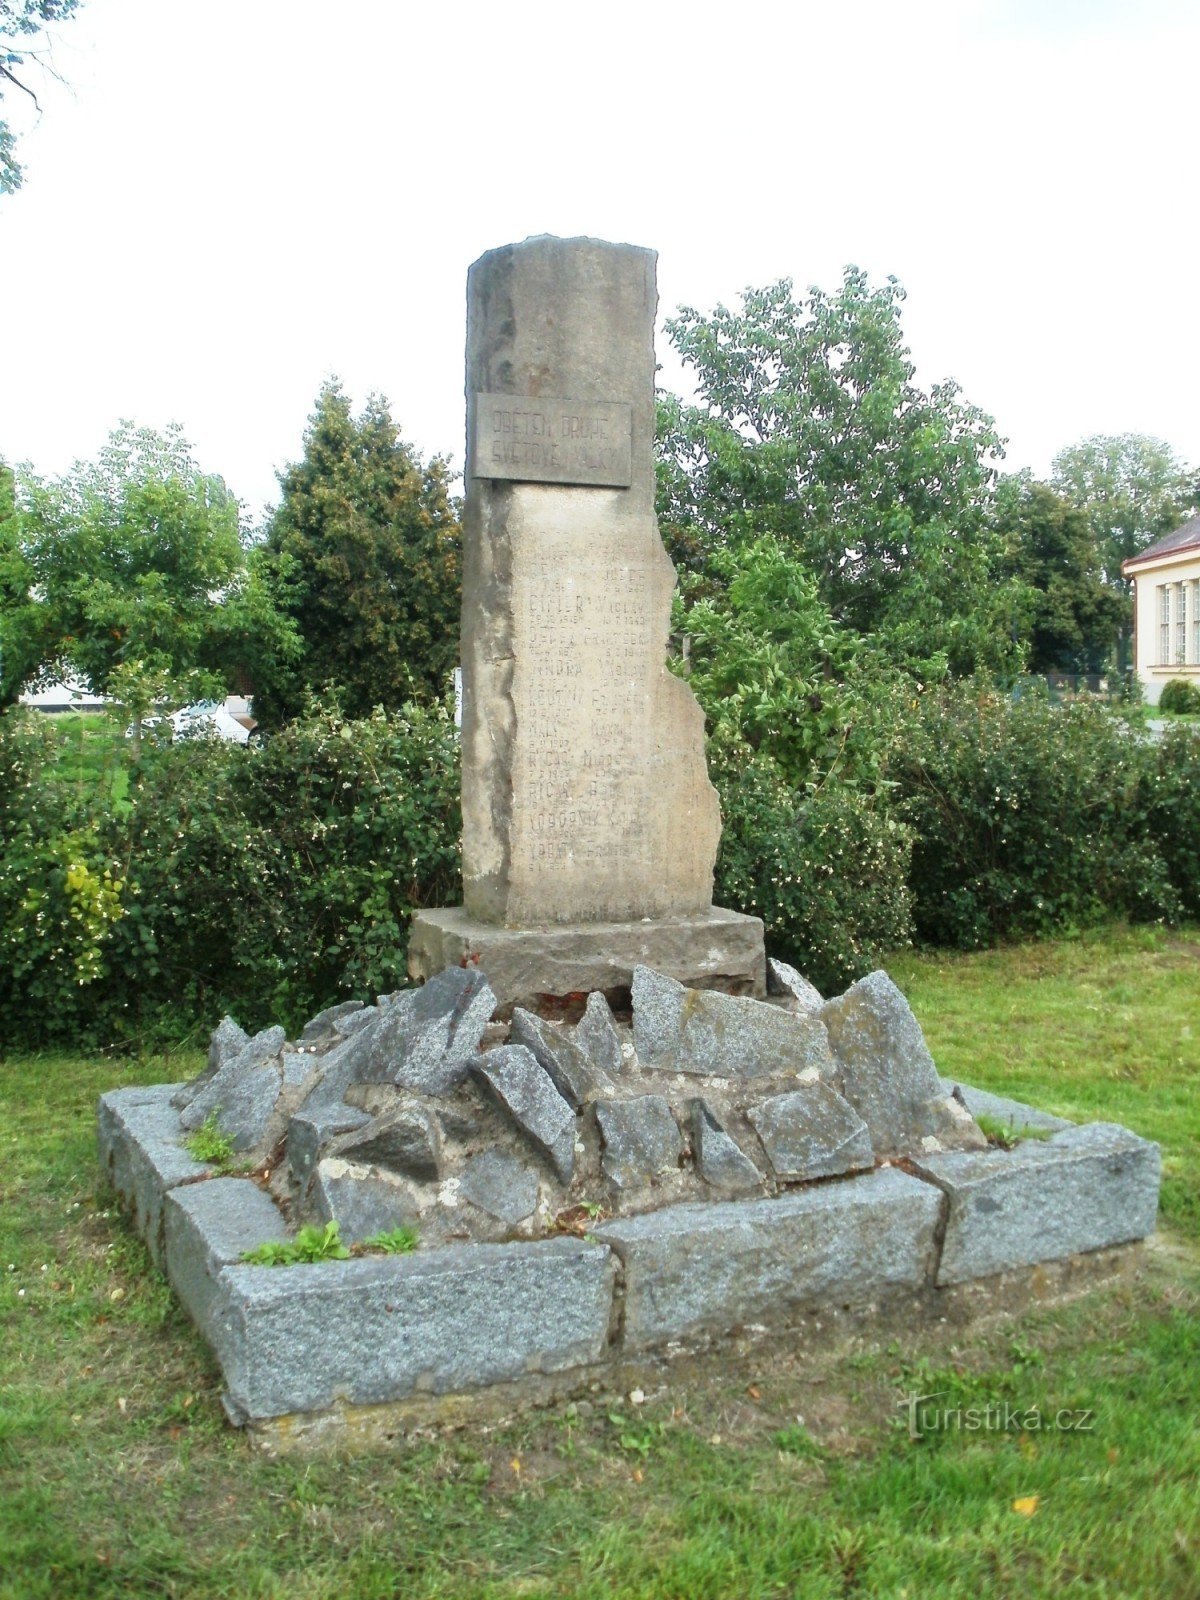 Градец-Кралове - Плотіште-над-Лабем - пам'ятник жертвам 2-ї св. війни